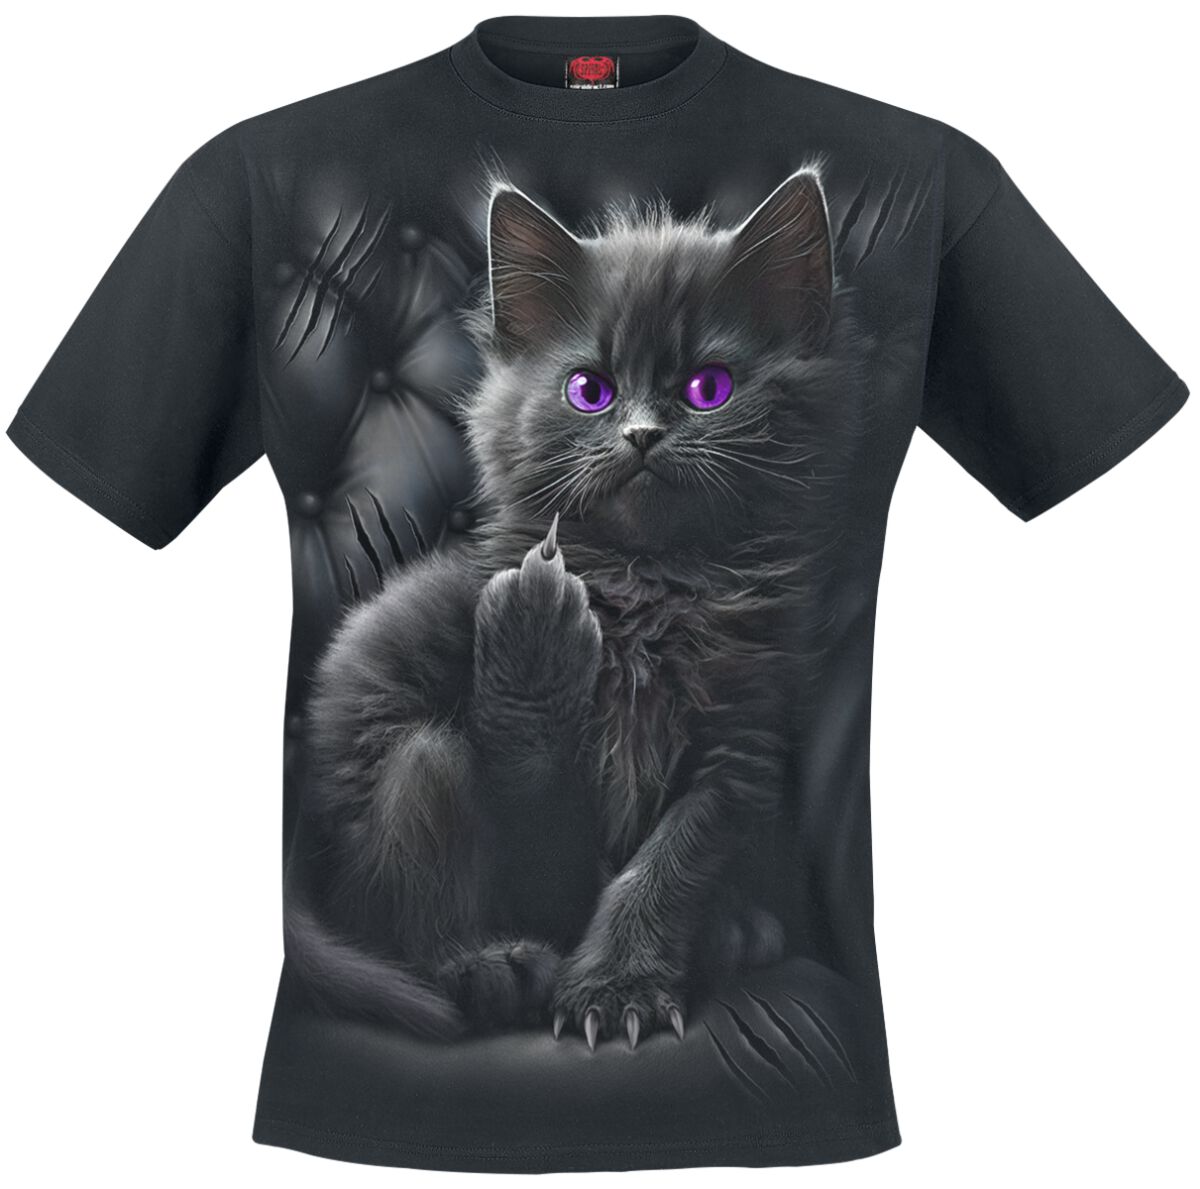 Spiral - Gothic T-Shirt - Cattitude - S bis L - Größe S - schwarz